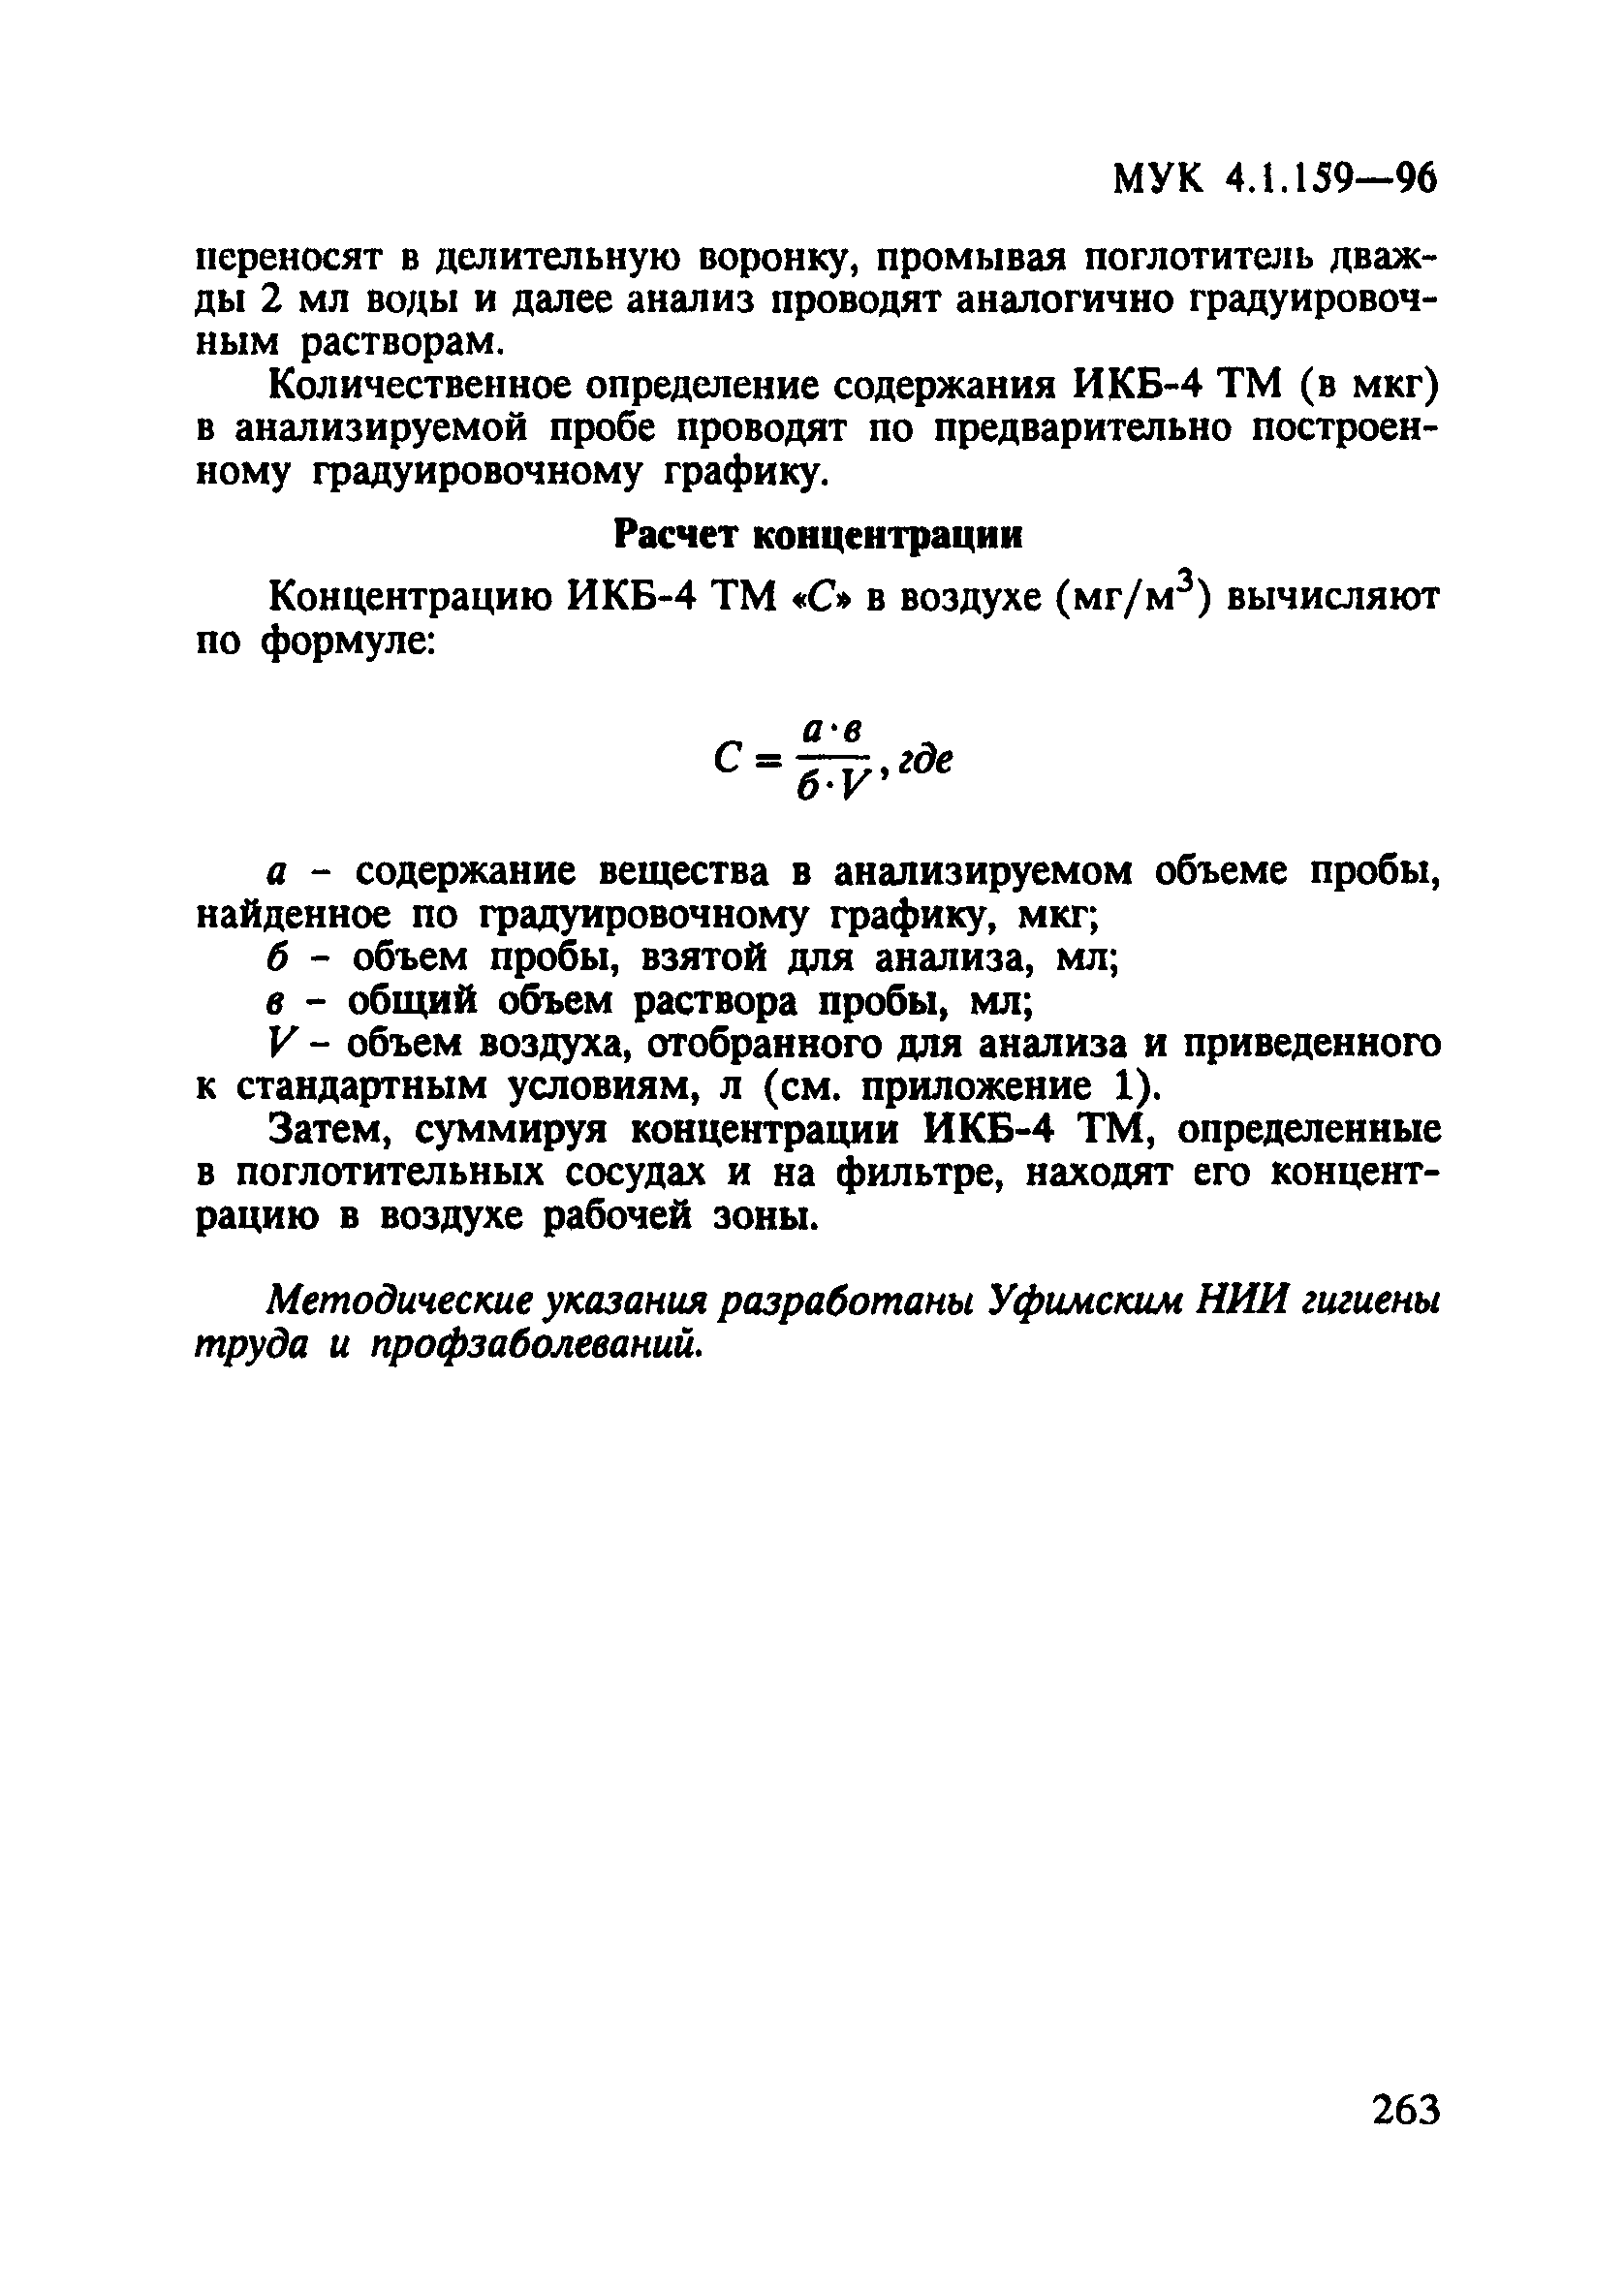 МУК 4.1.159-96